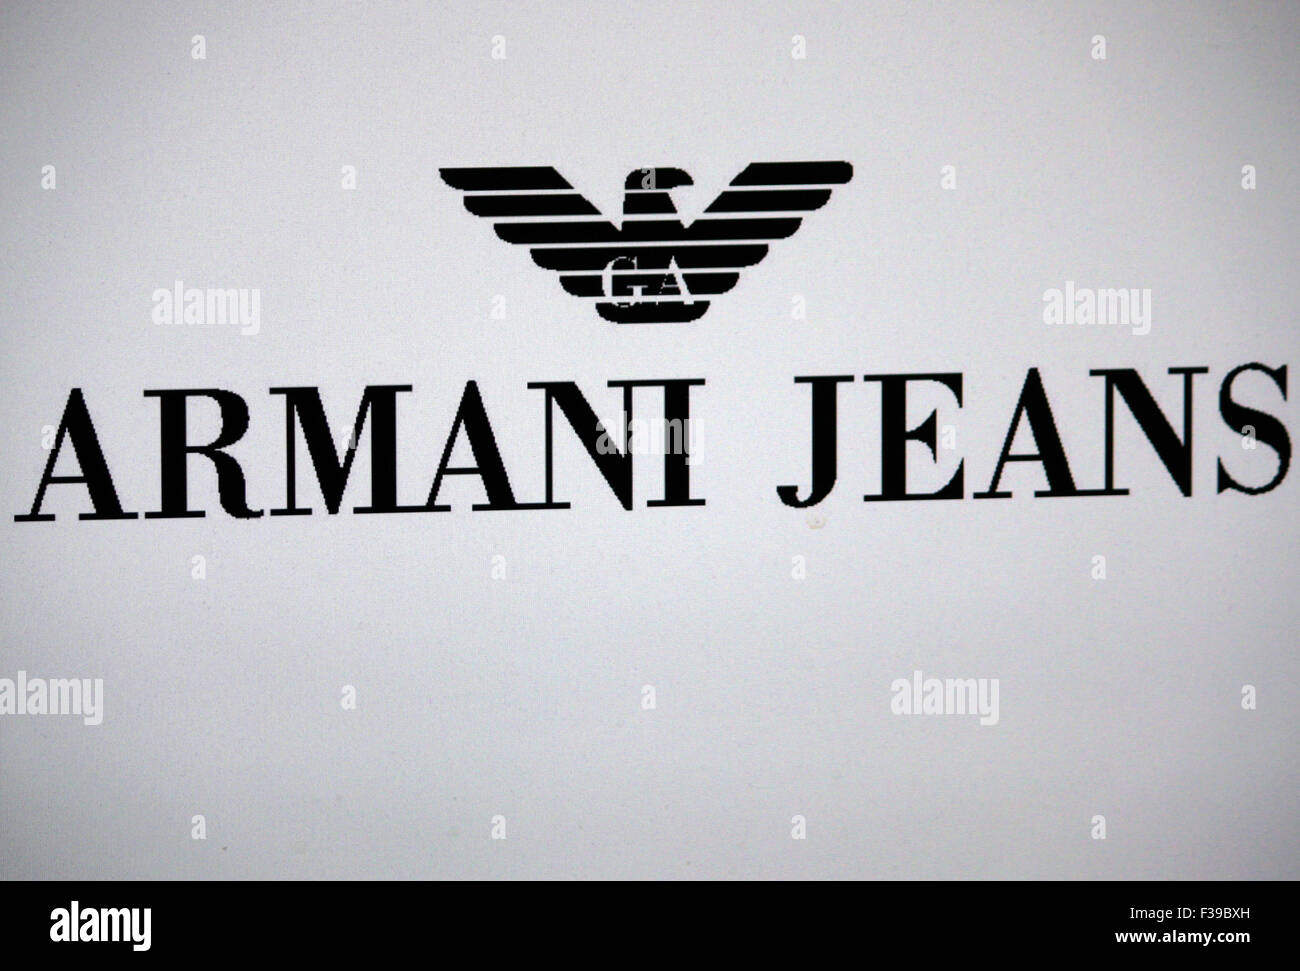 armani jeans logo